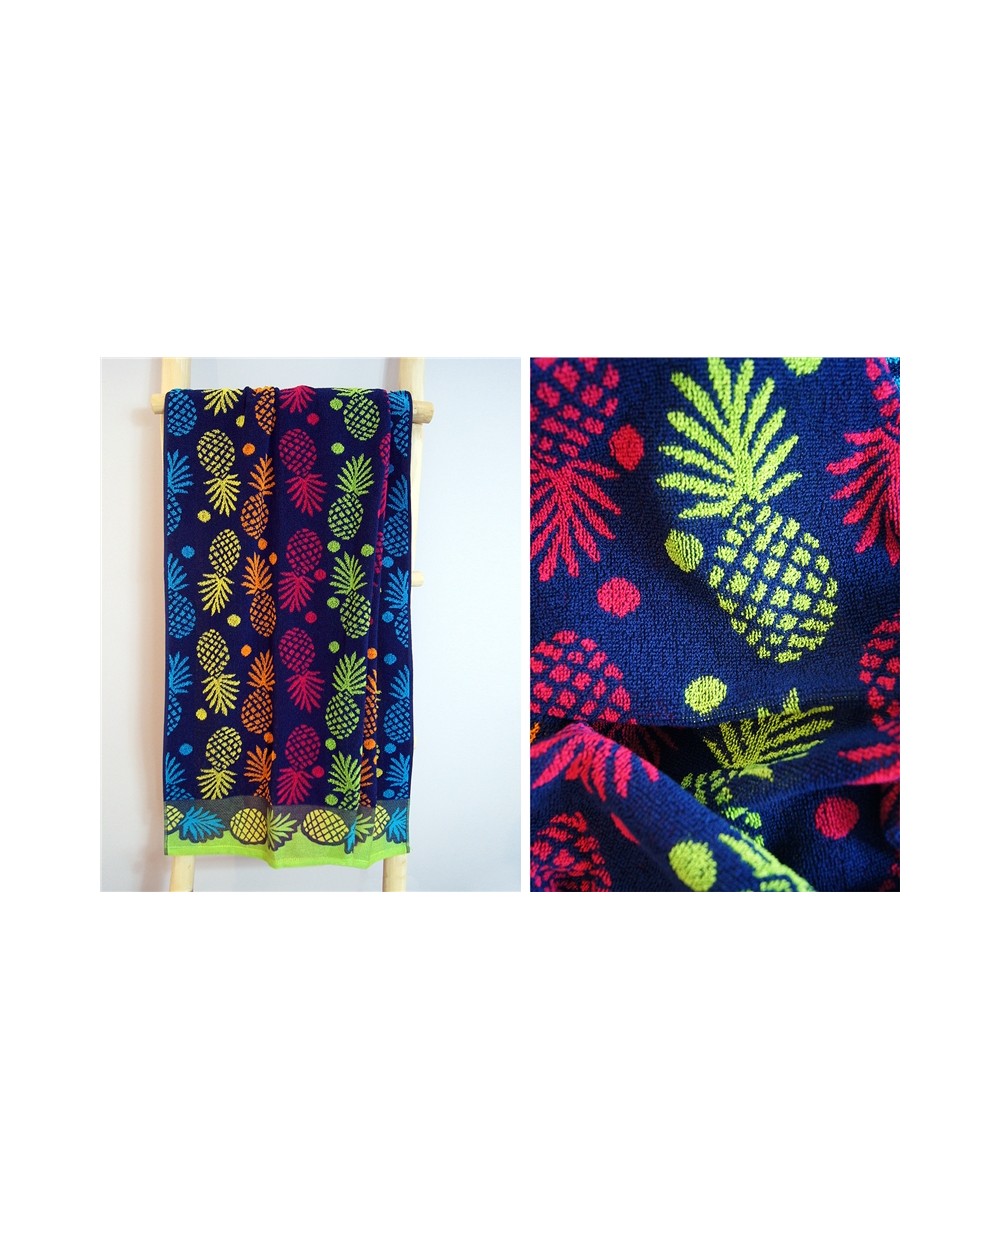 Ręcznik plażowy Ananas bawełna 70x140 niebieski